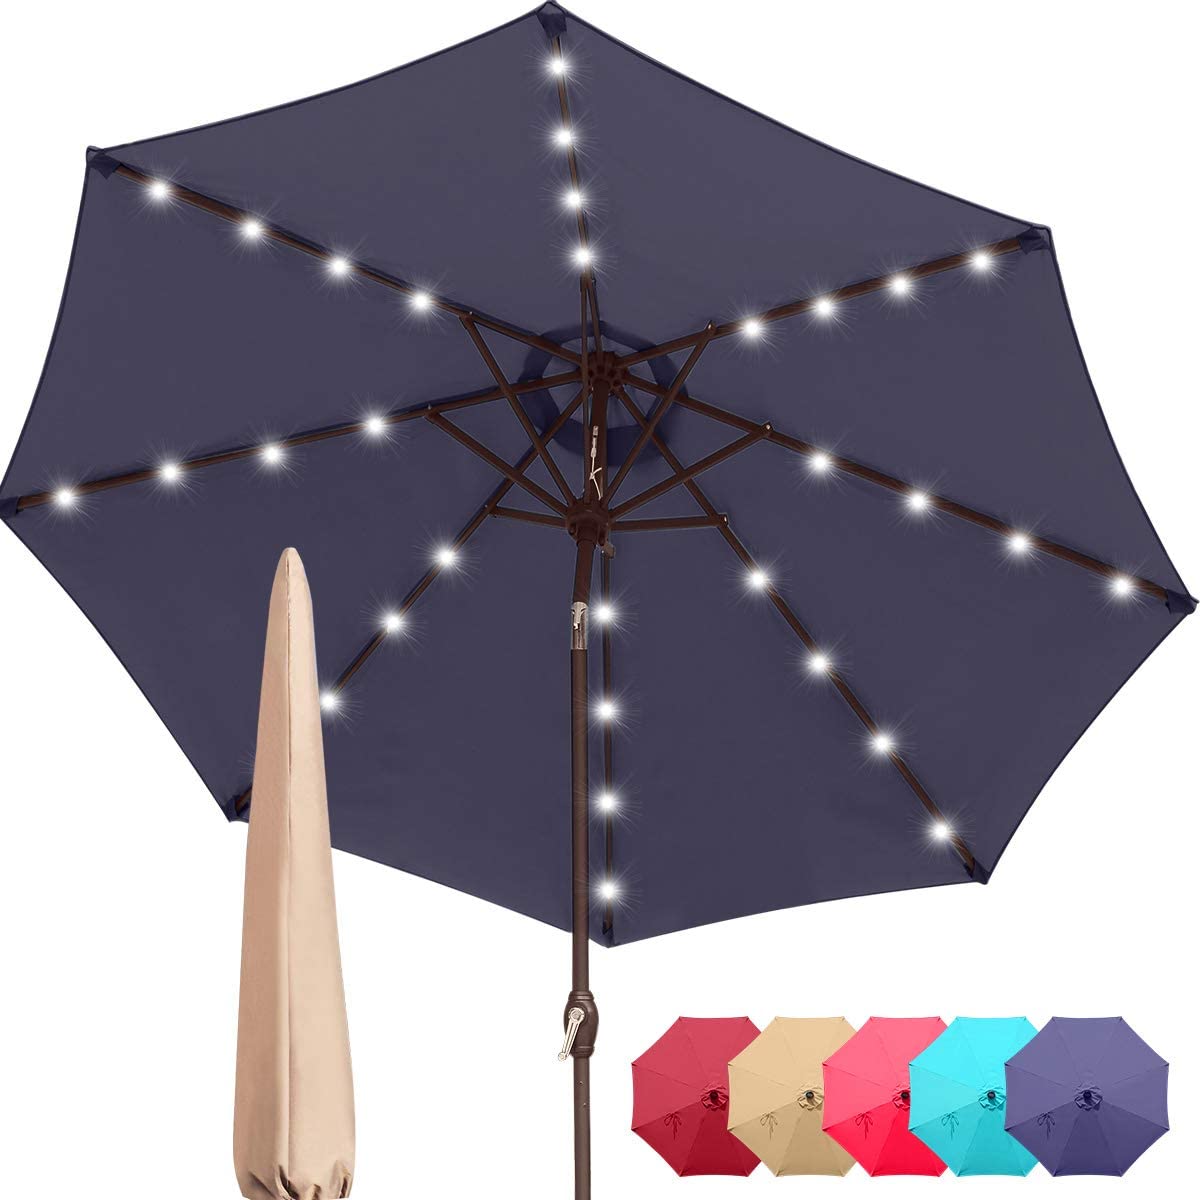 Upgraded 9' Patio Umbrella#color_navy blue